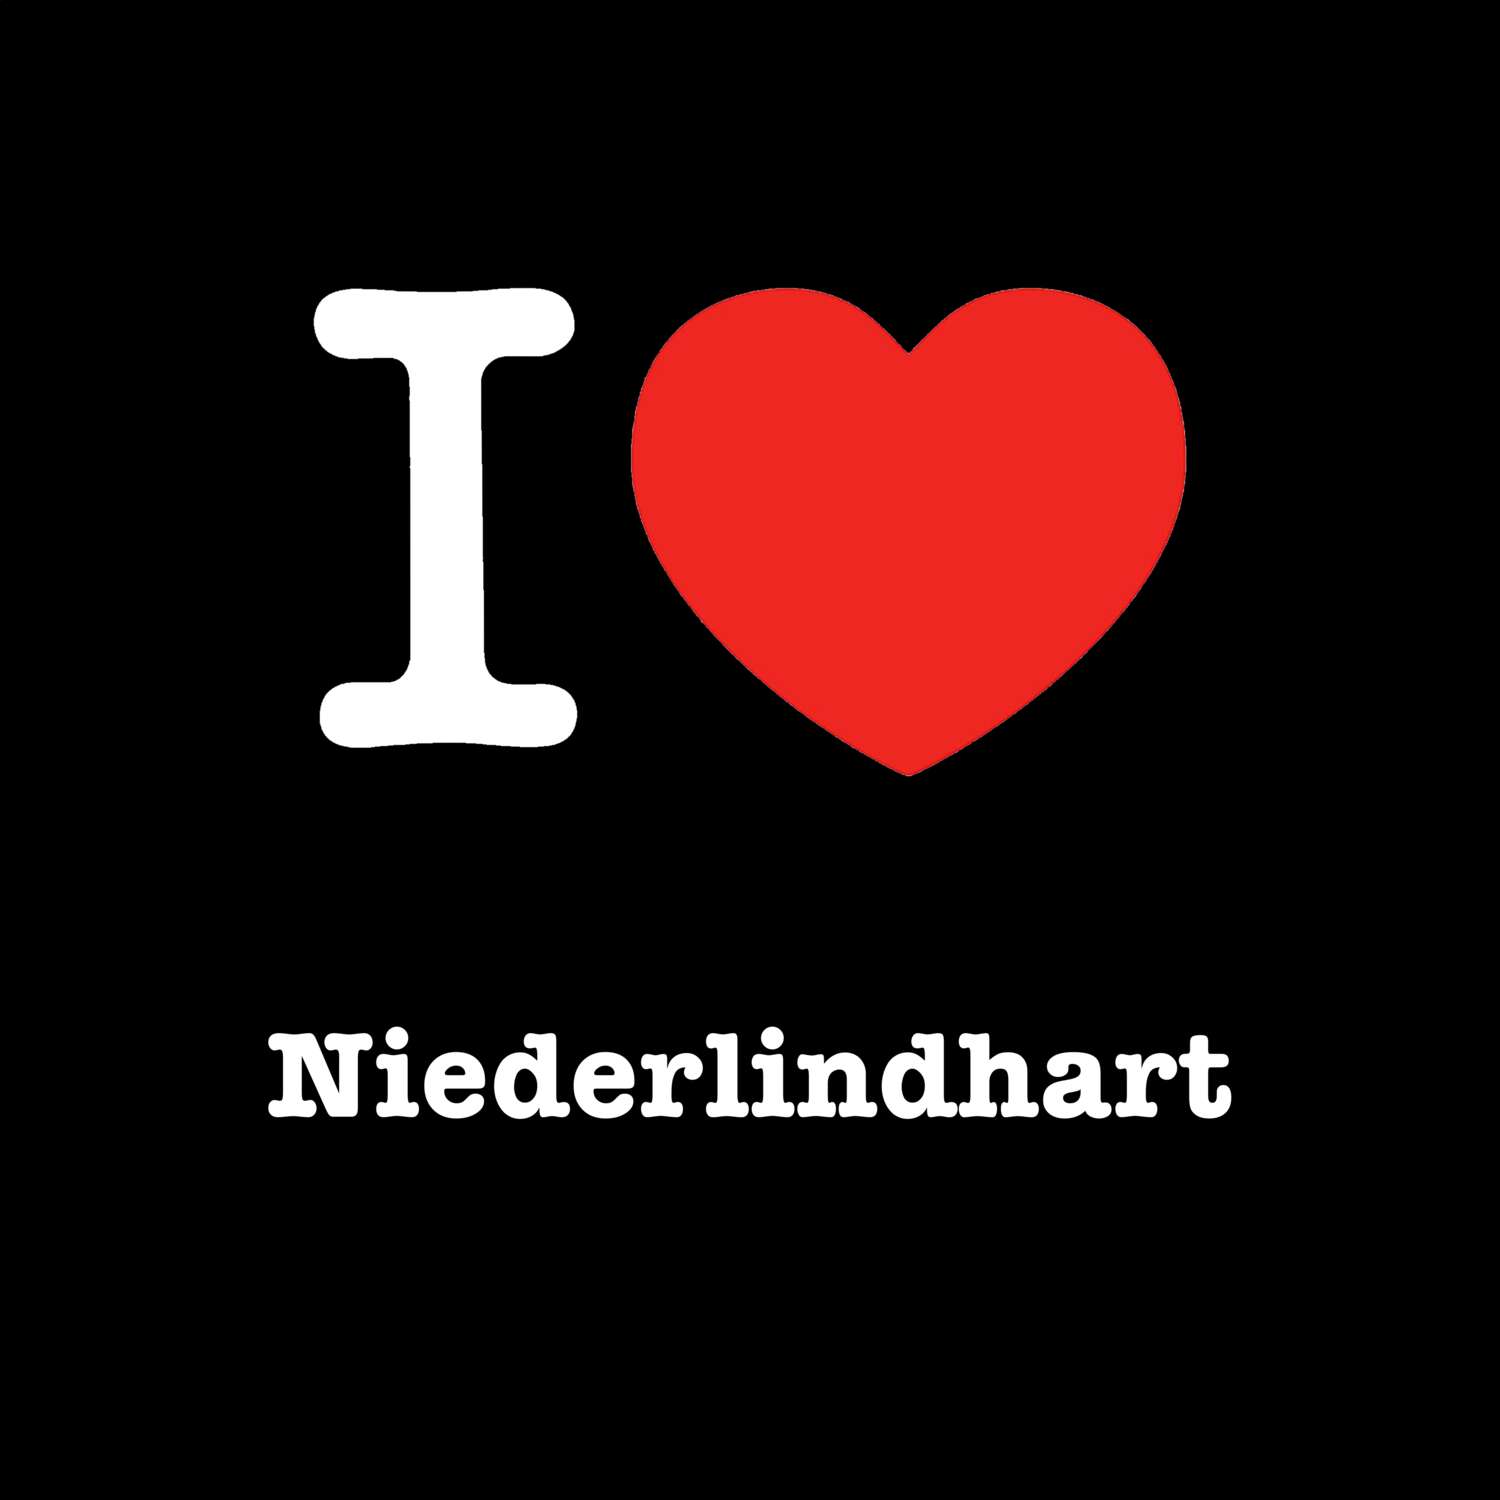 Niederlindhart T-Shirt »I love«